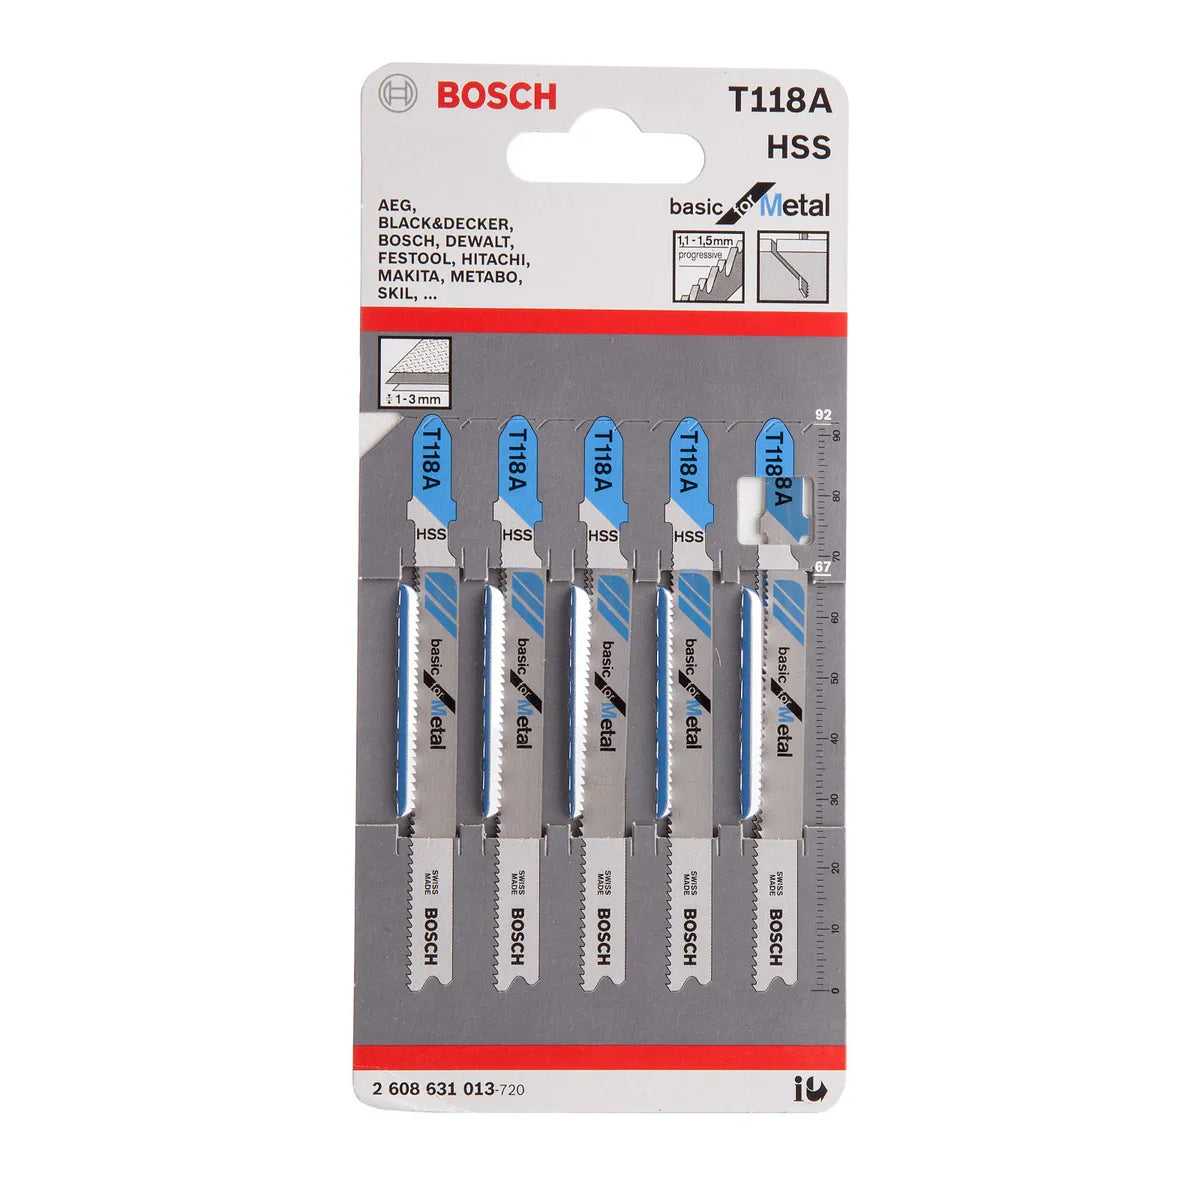 Bosch Jigsaw Blades T118A HSS 5 Pack 2608631013 Power Tool Services